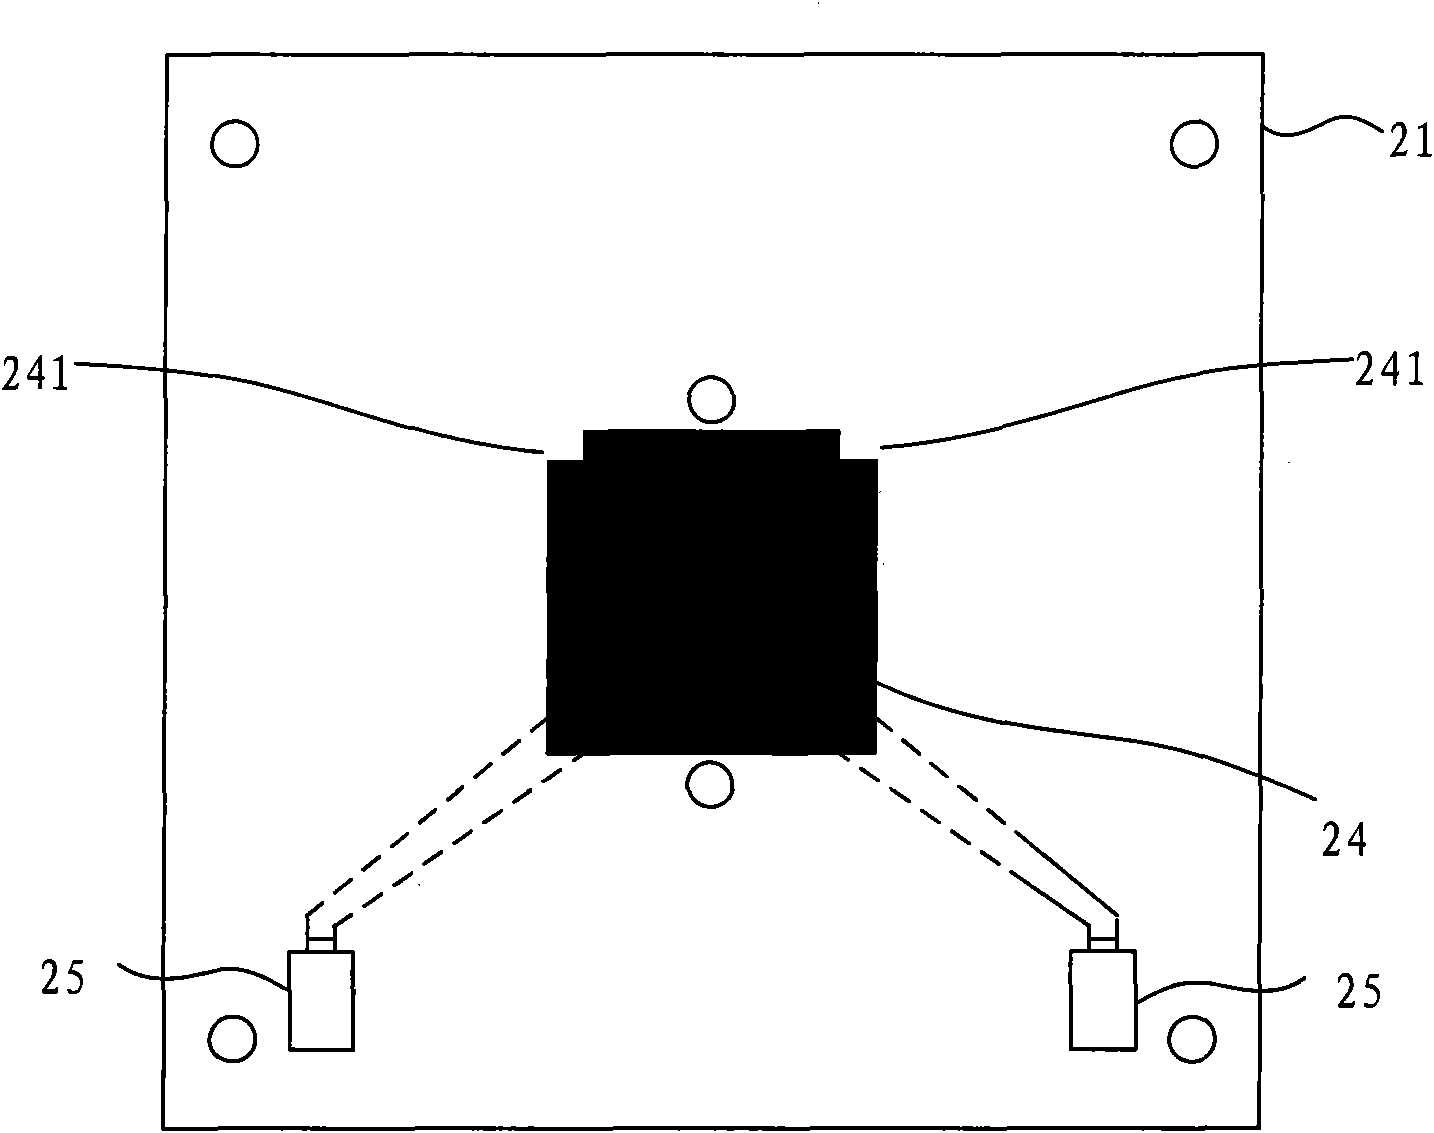 Dual-polarized microstrip antenna